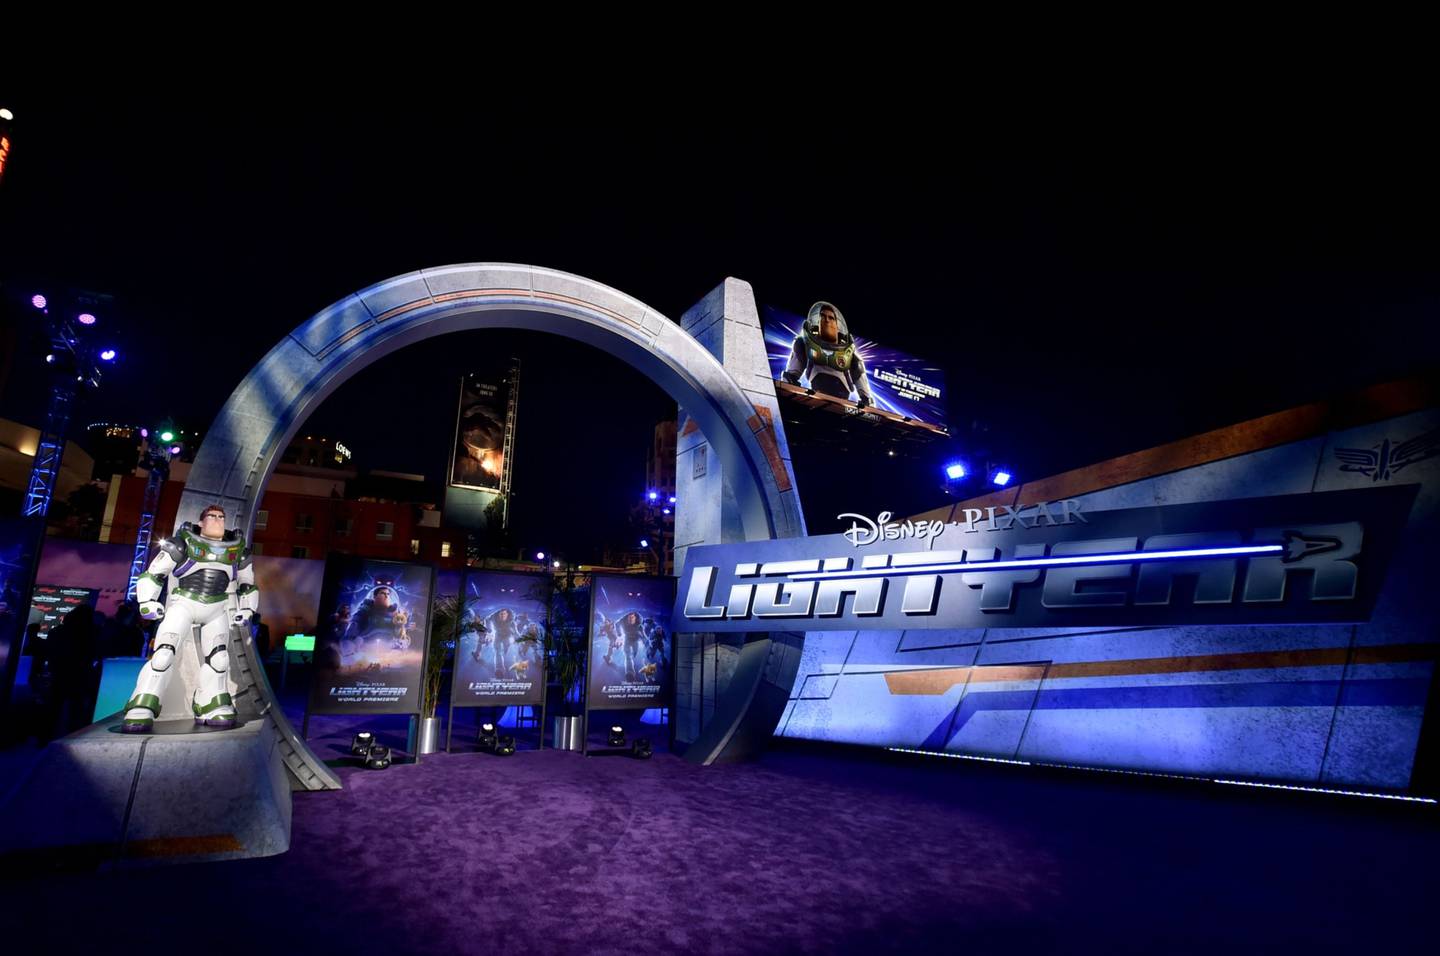 Una vista de la fiesta posterior se ve durante el estreno mundial del largometraje de Disney y Pixar "Lightyear" en el Teatro Captain en Hollywood, California. (Fotógrafo: Alberto E. Rodríguez/Getty Images)dfd